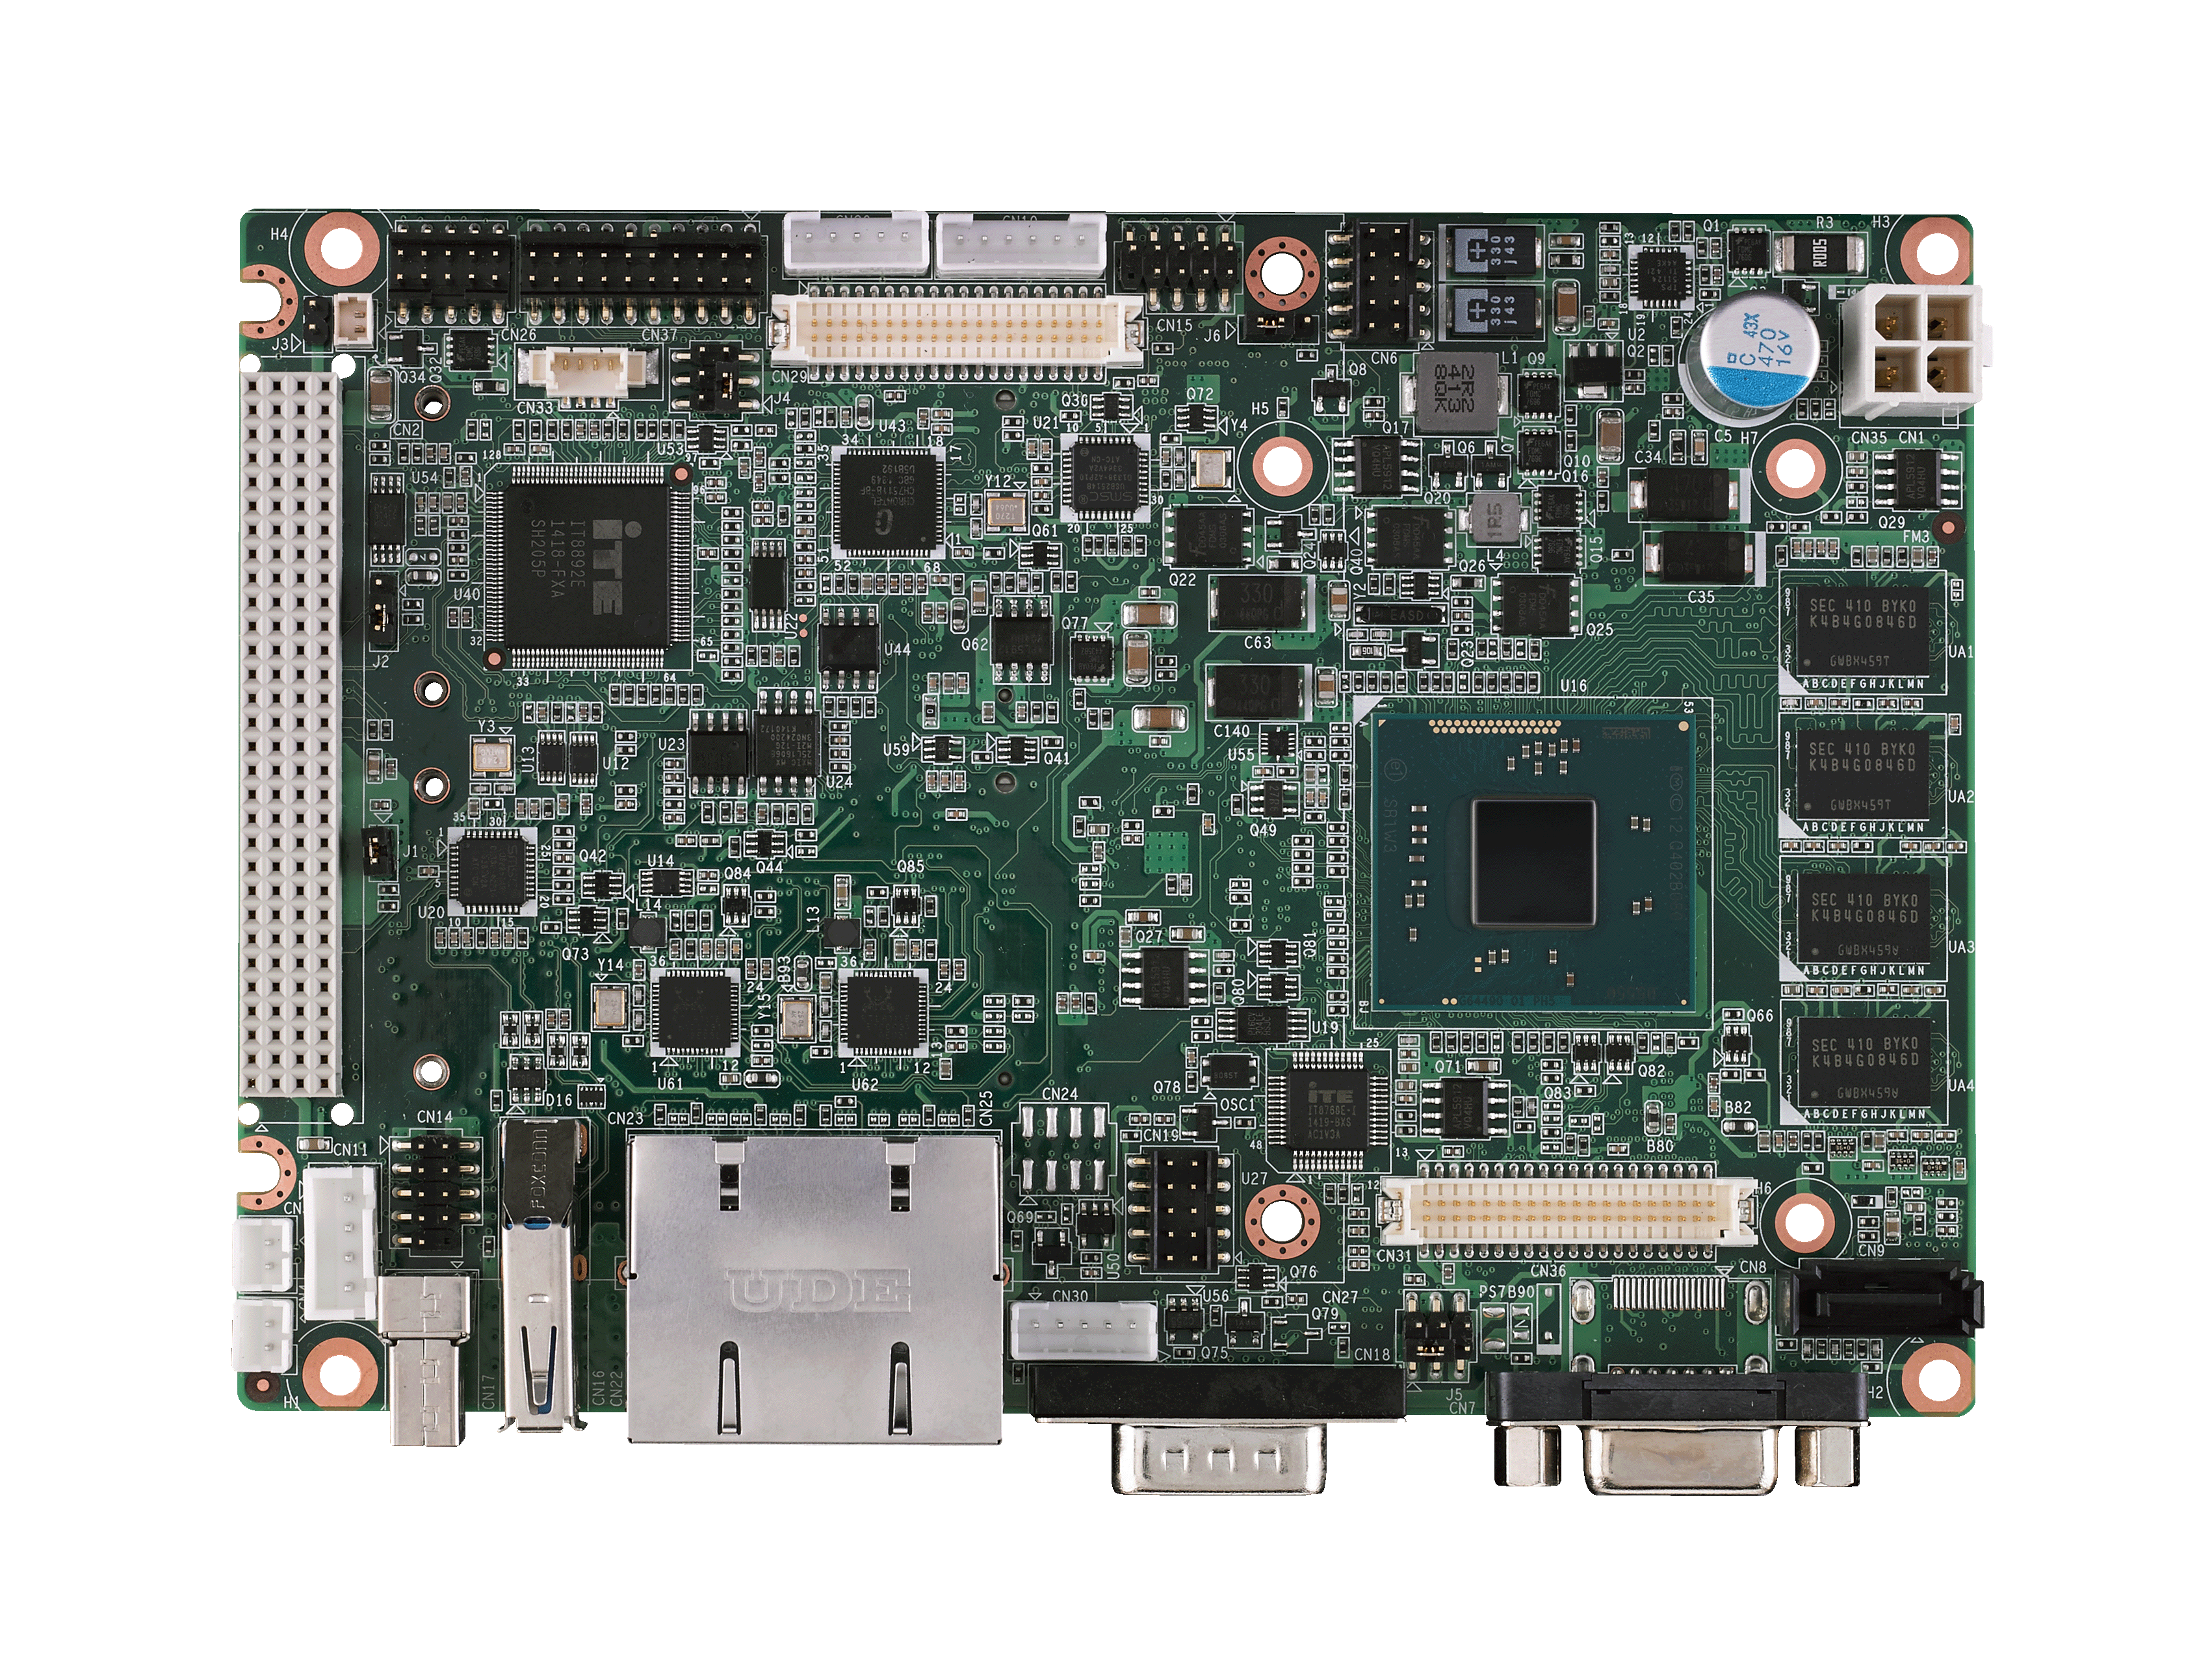 2COM 2LAN 4USB 512MB DRAM ADVANTECH PCM-3343EL-256A1E PC/104 Vortex86DX 1GHZ Module with VGA/LVDS/TTL